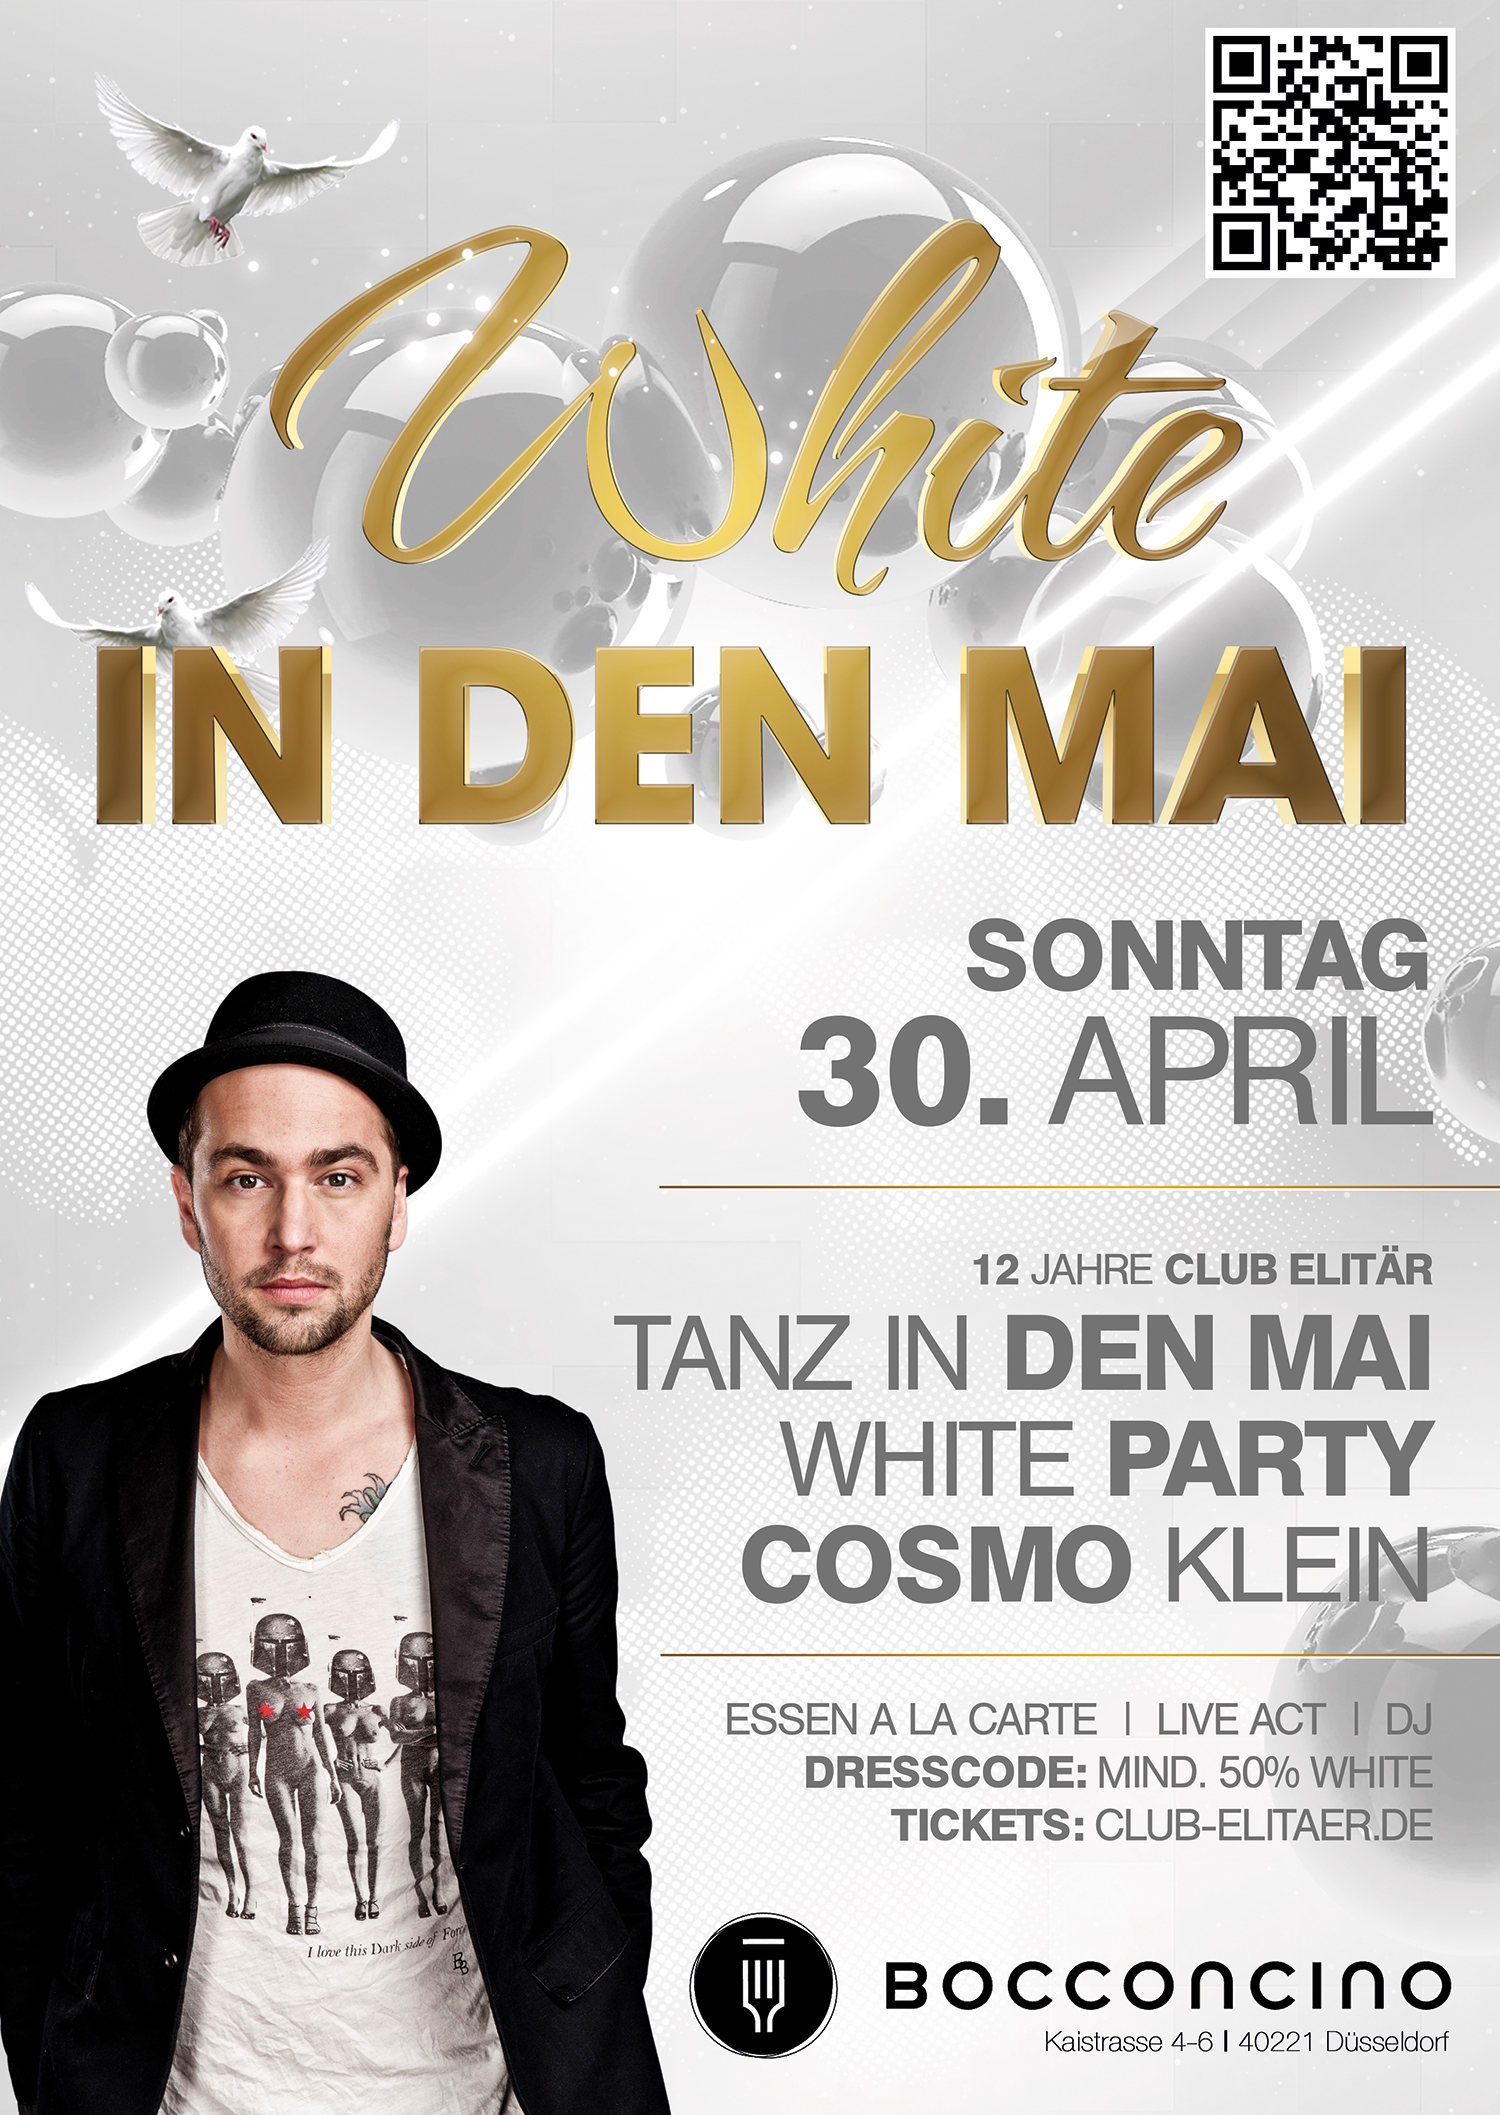 White in den Mai Düsseldorf